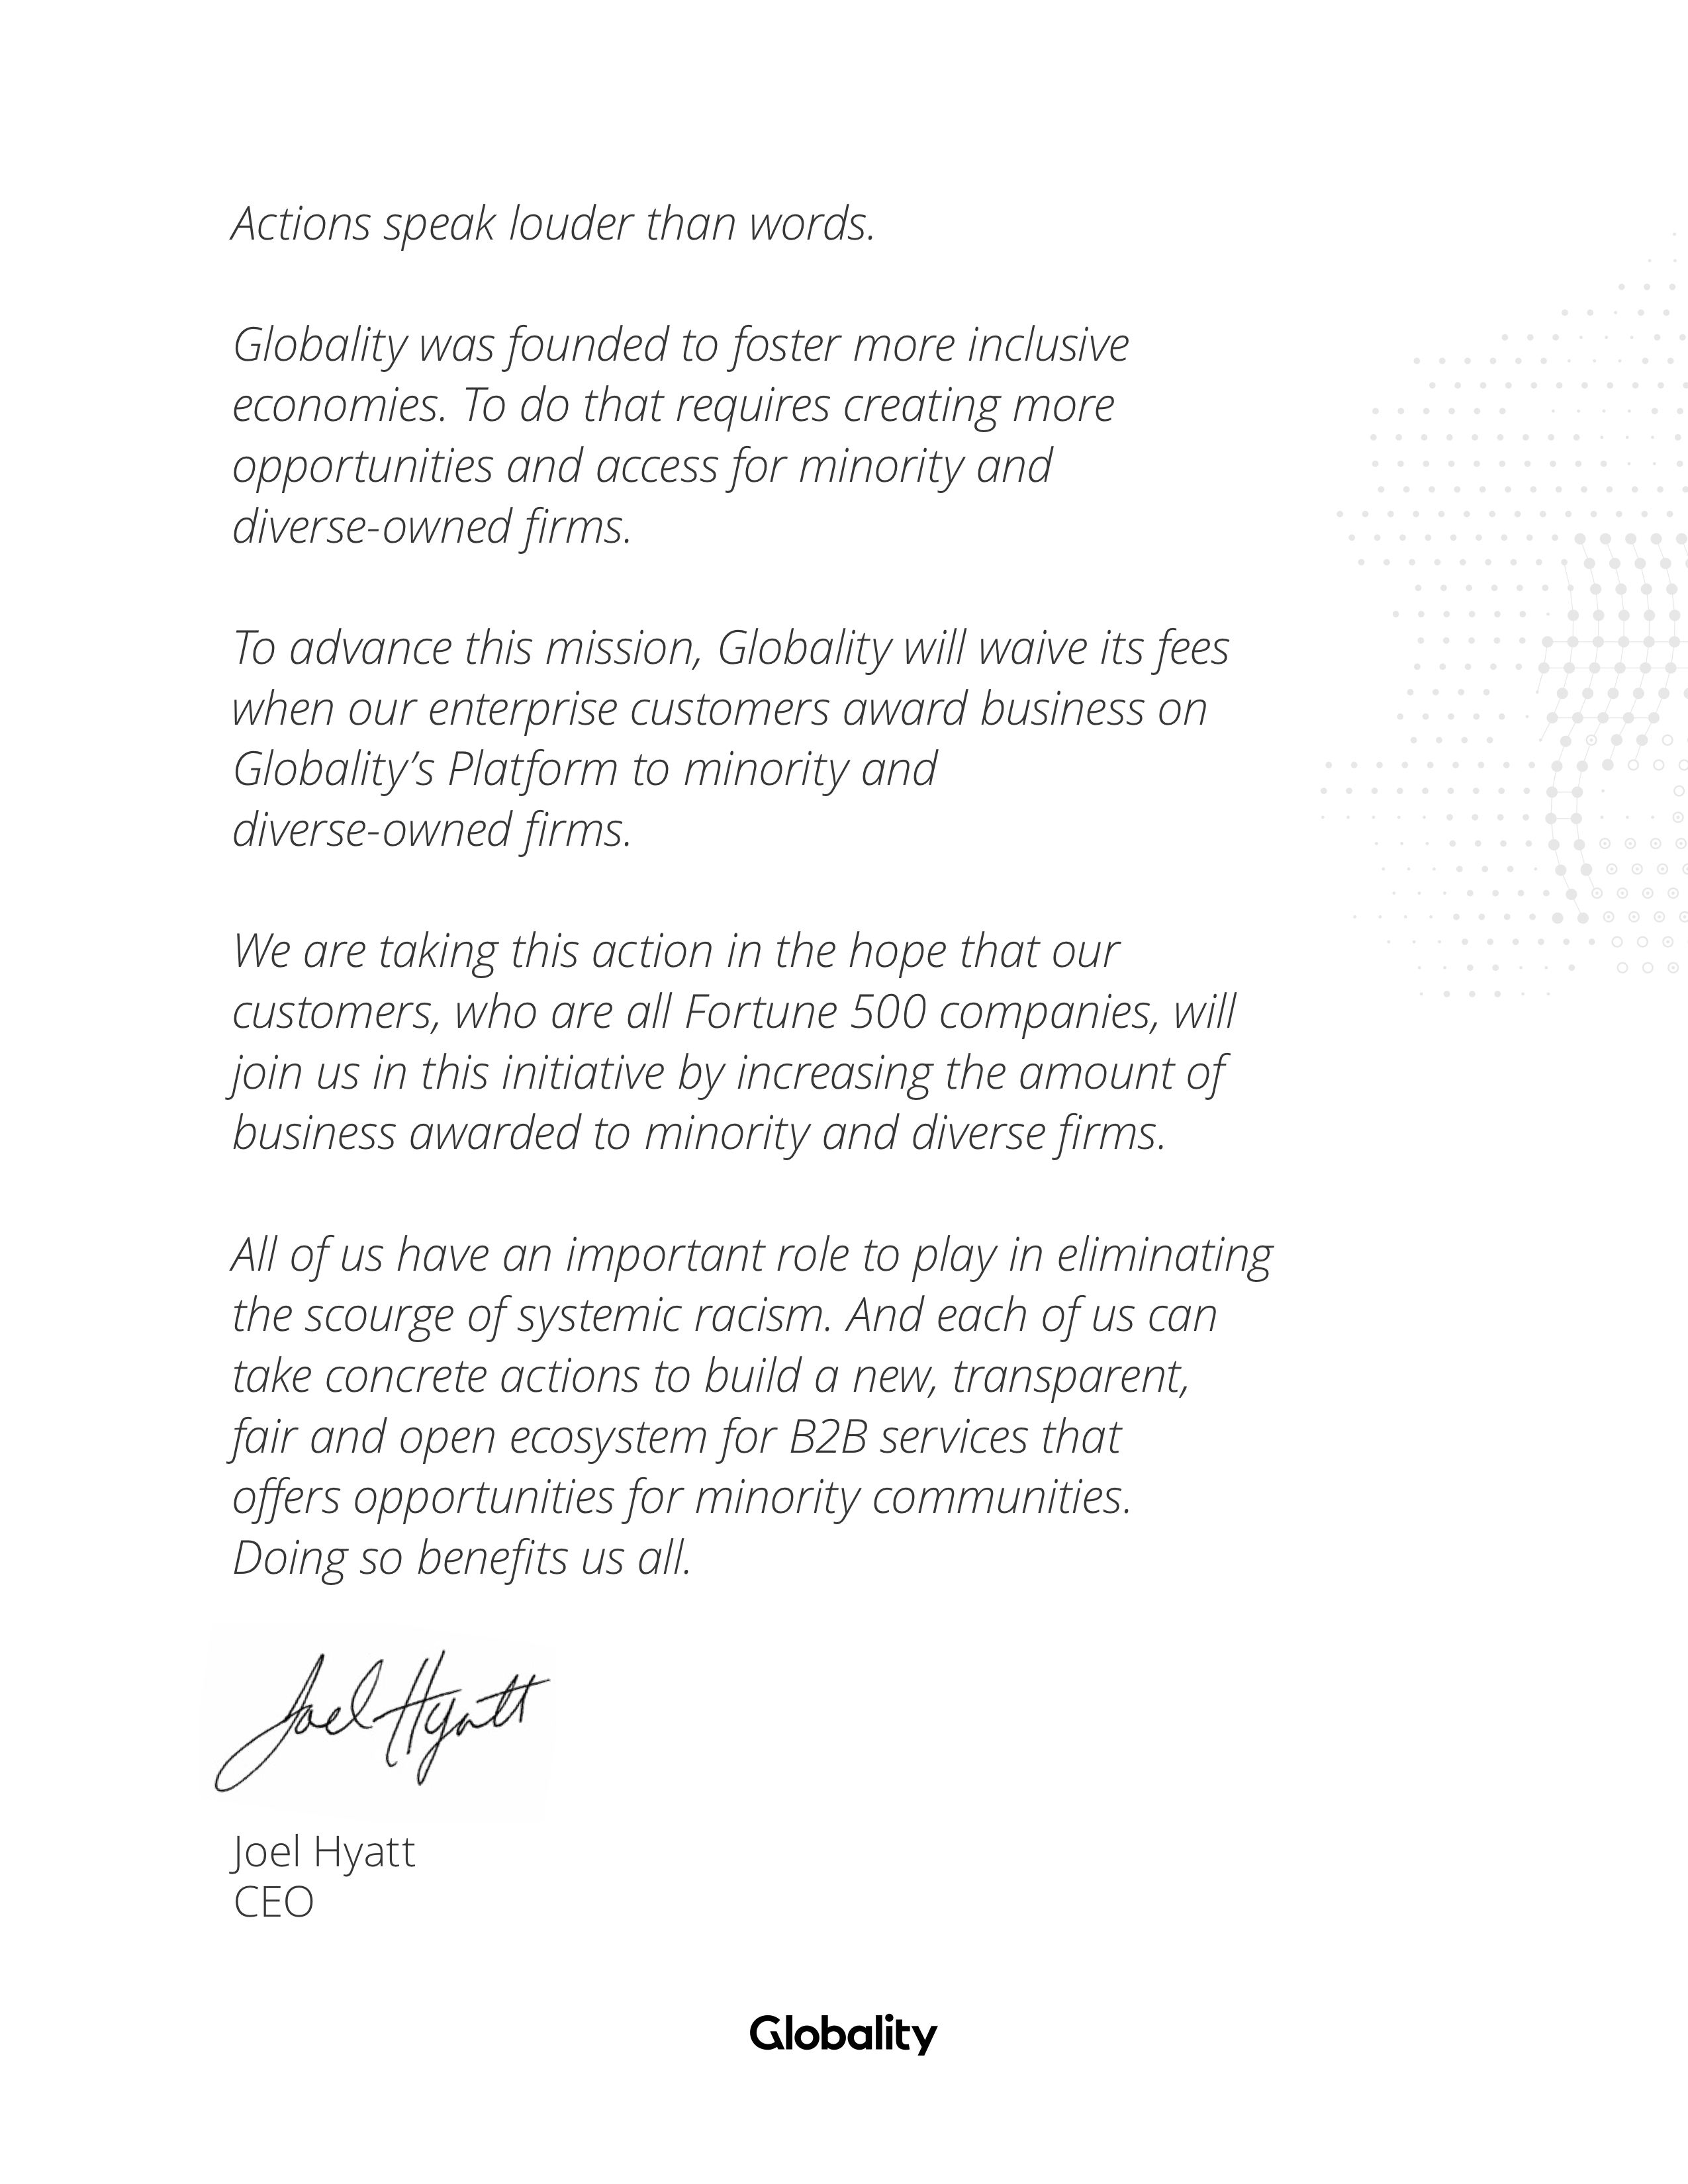 A letter from Globality CEO Joel Hyatt